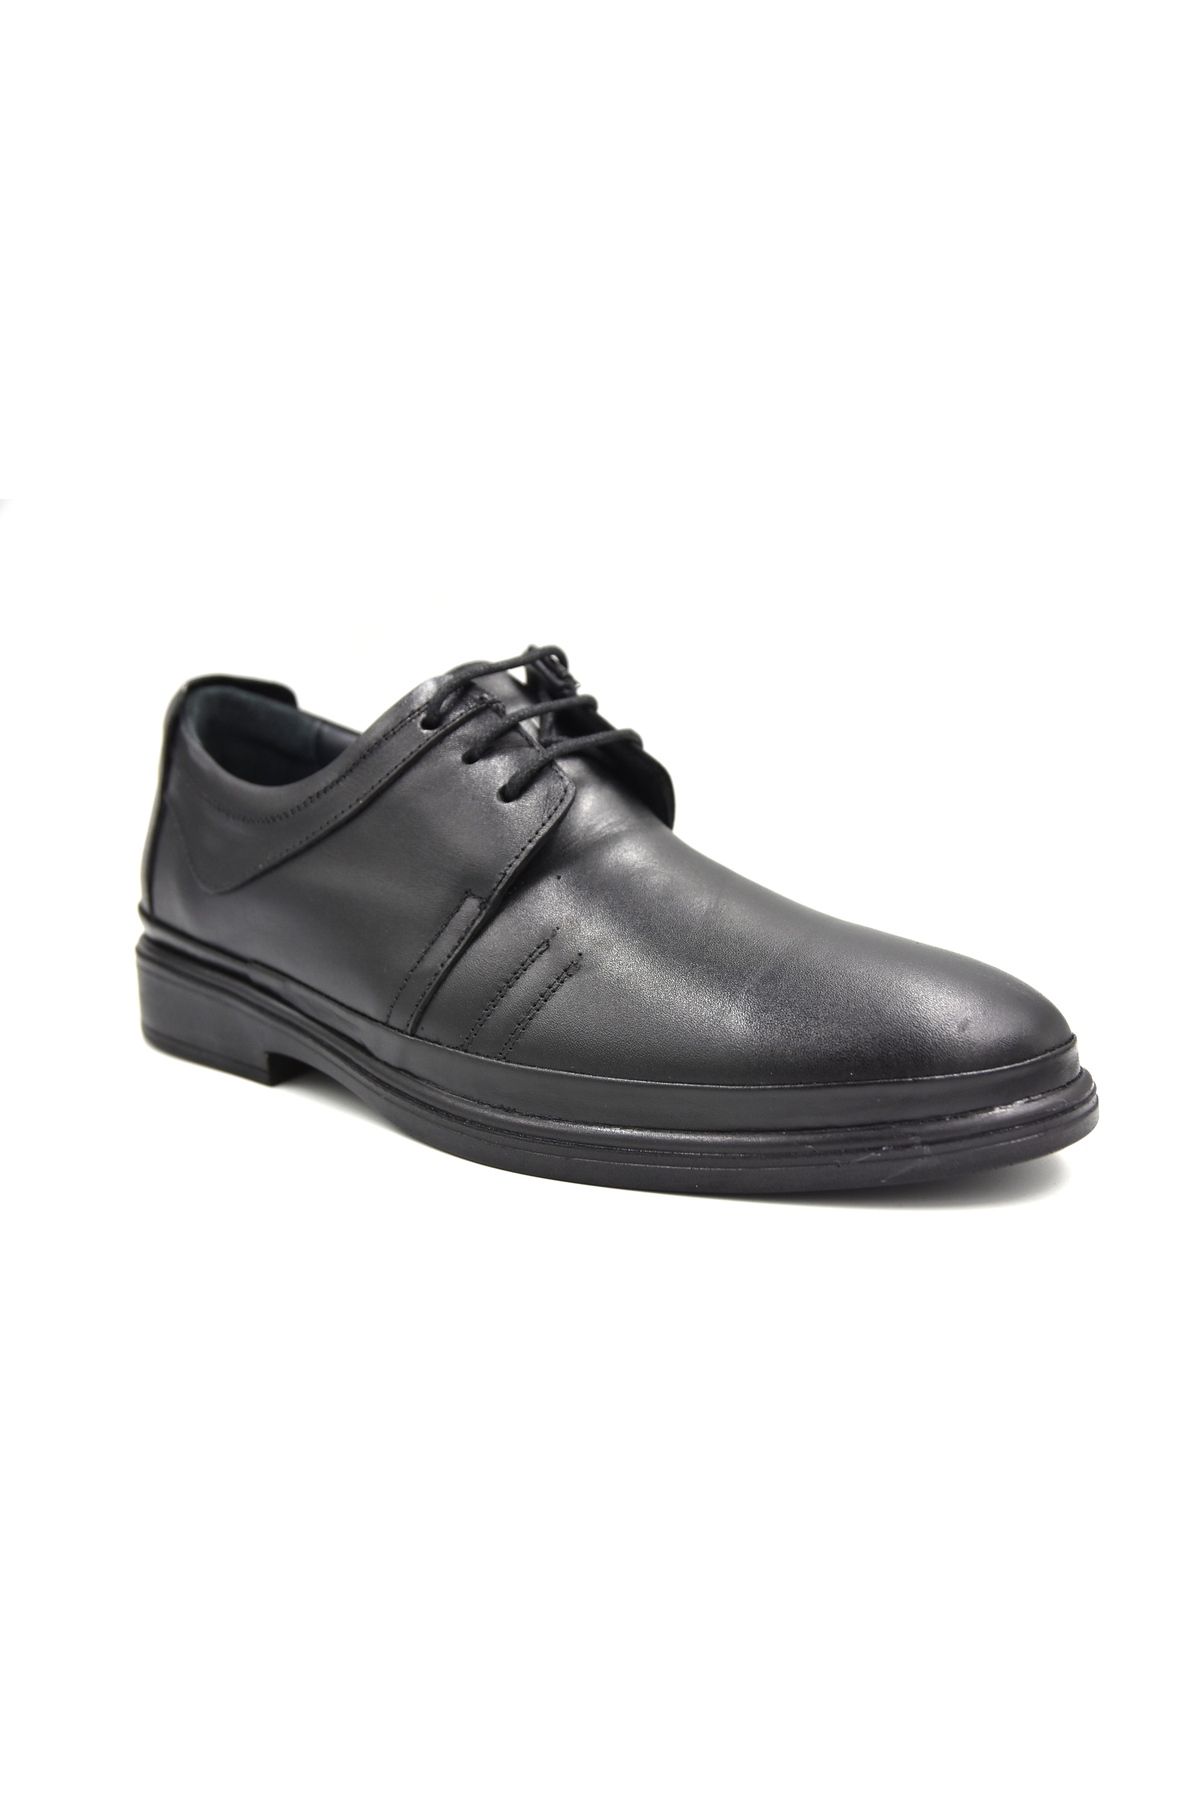 Prego Içi Dışı Hakiki Deri Poli Hafif Taban Bağcıklı Günlük Erkek Comfort Ayakkabı Siyah